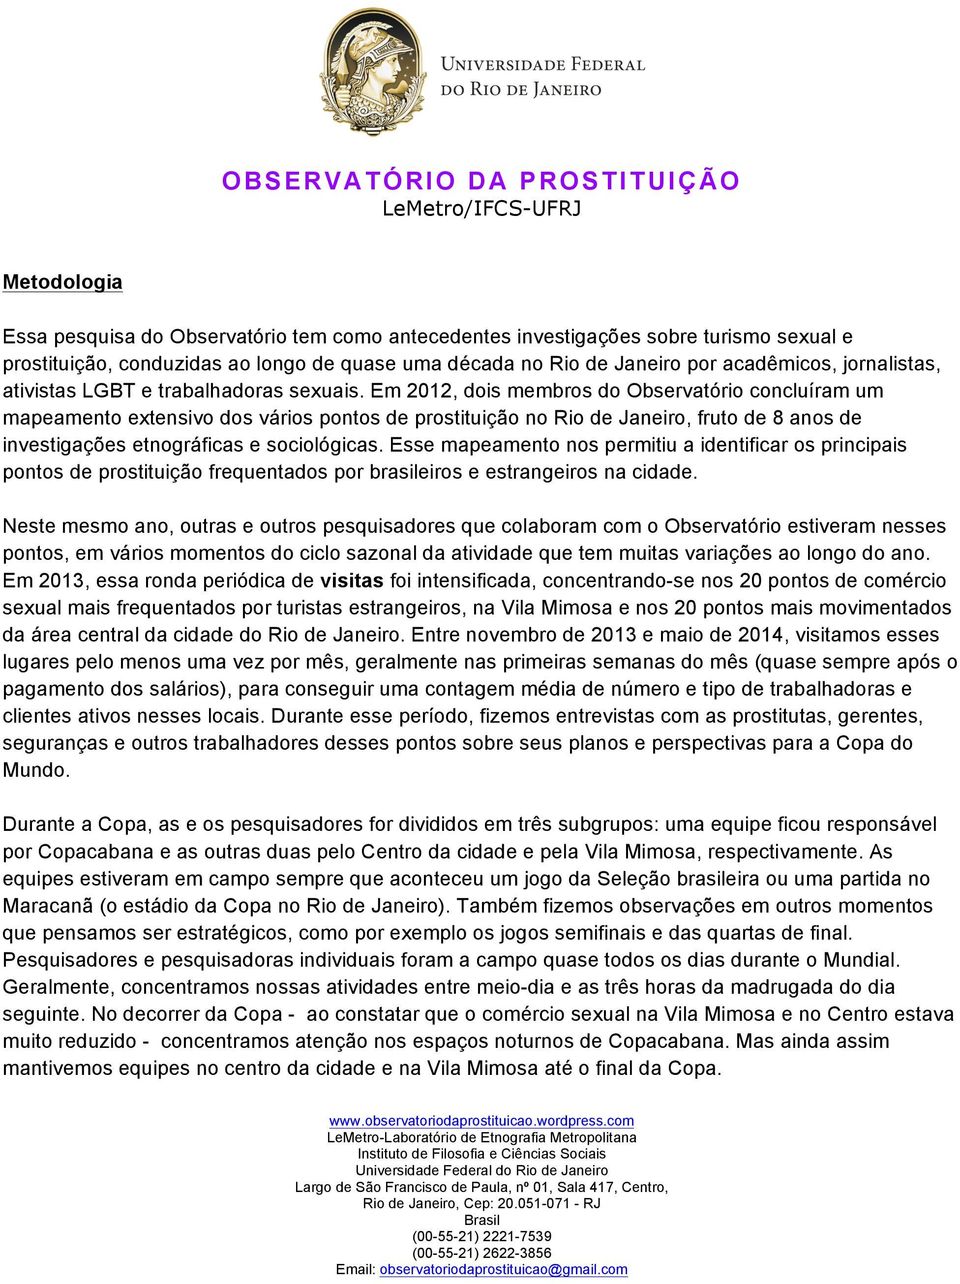 Em 2012, dois membros do Observatório concluíram um mapeamento extensivo dos vários pontos de prostituição no Rio de Janeiro, fruto de 8 anos de investigações etnográficas e sociológicas.